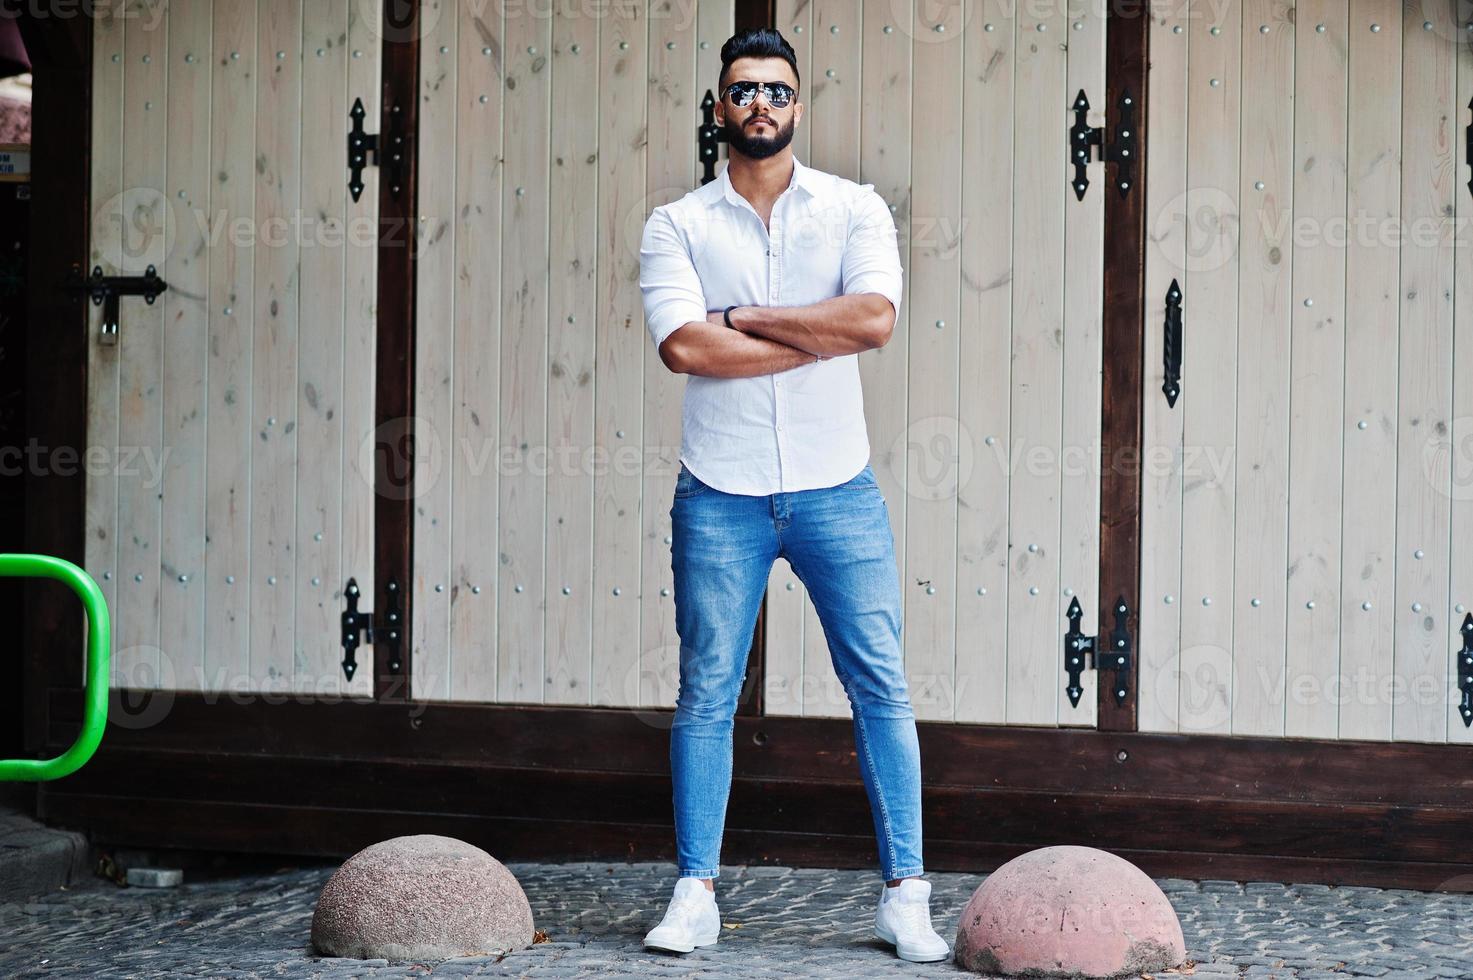 stijlvolle lange Arabische man model in wit overhemd, jeans en zonnebril gesteld op straat van de stad. baard aantrekkelijke Arabische man. foto